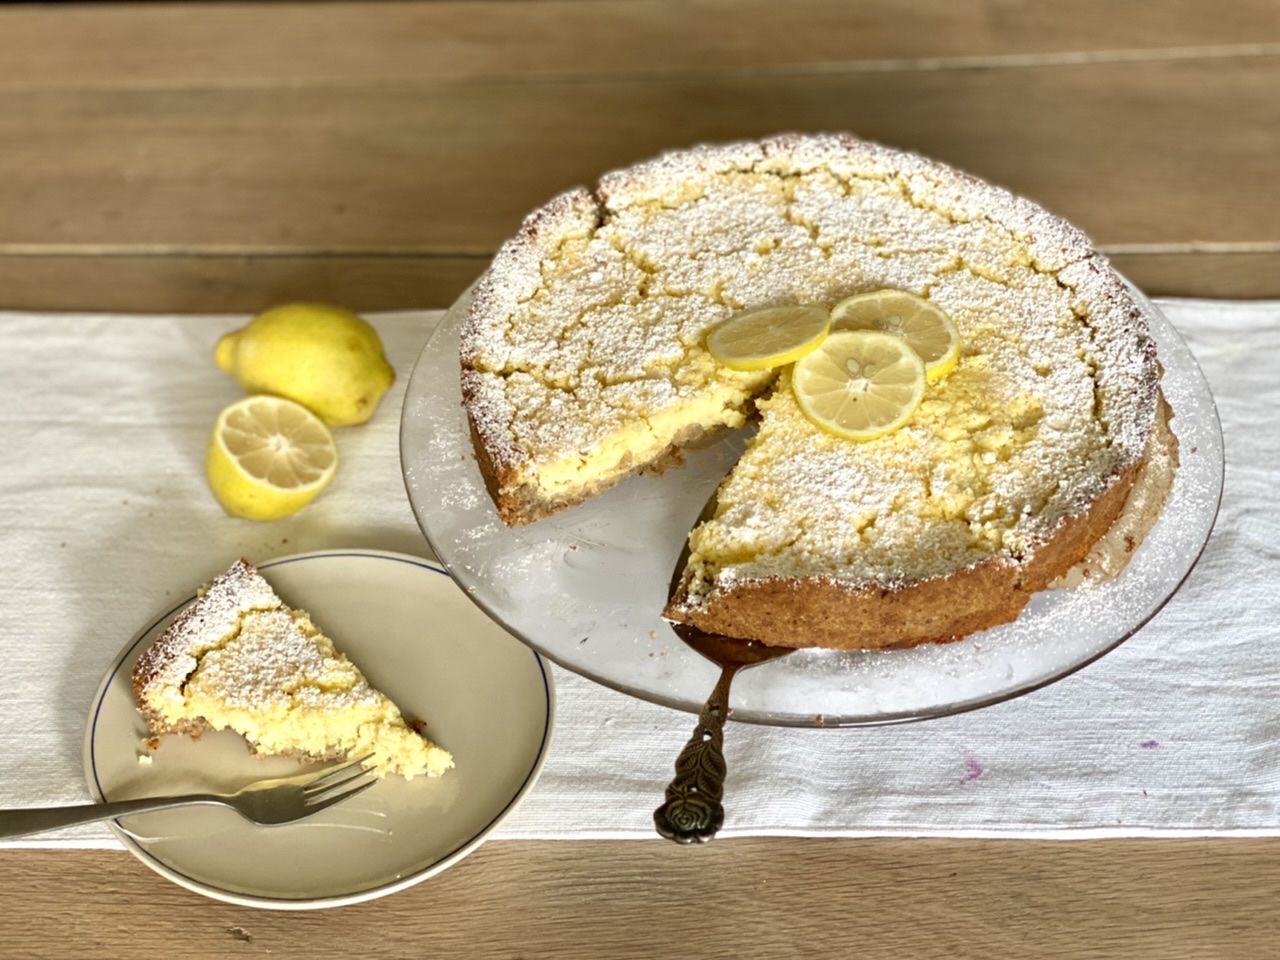 Winterkuchen: Fluffige Zitronentarte, die im Mund schmilzt - feinslieb